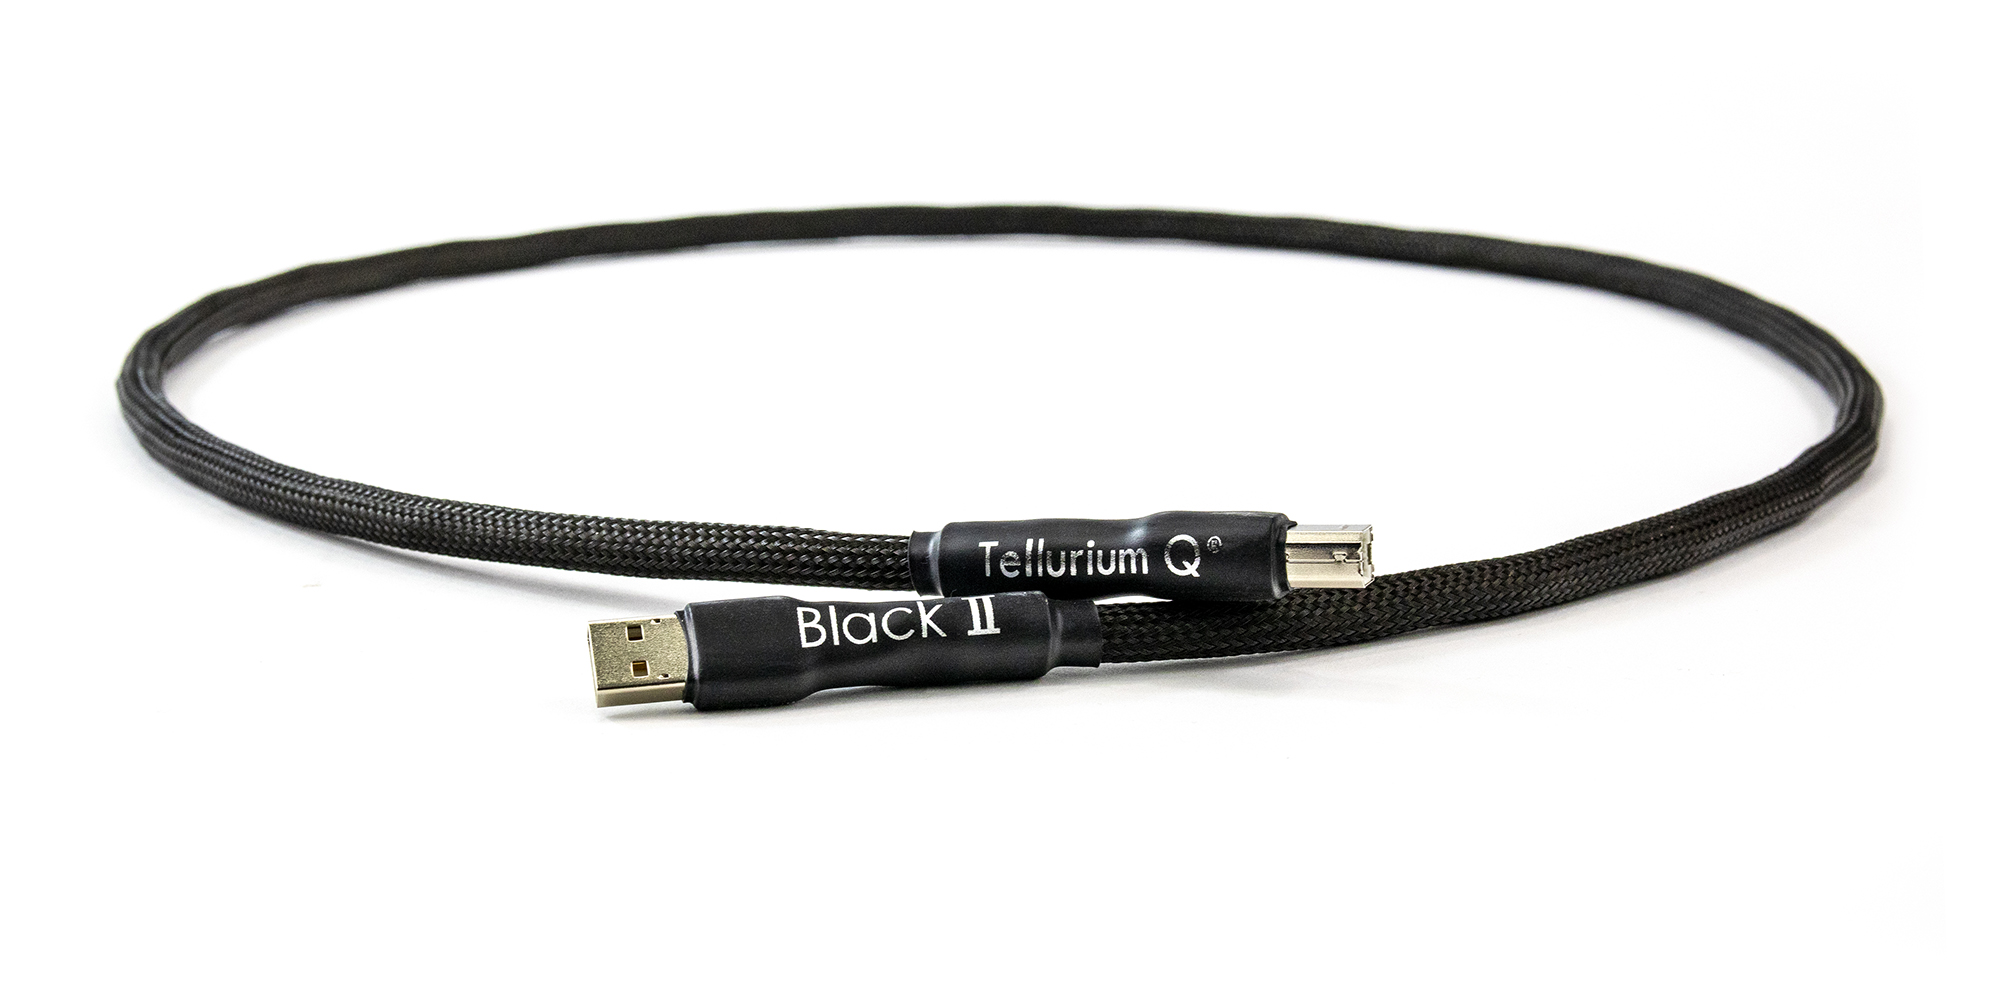 Tellurium Q | Black II | USB Kabel